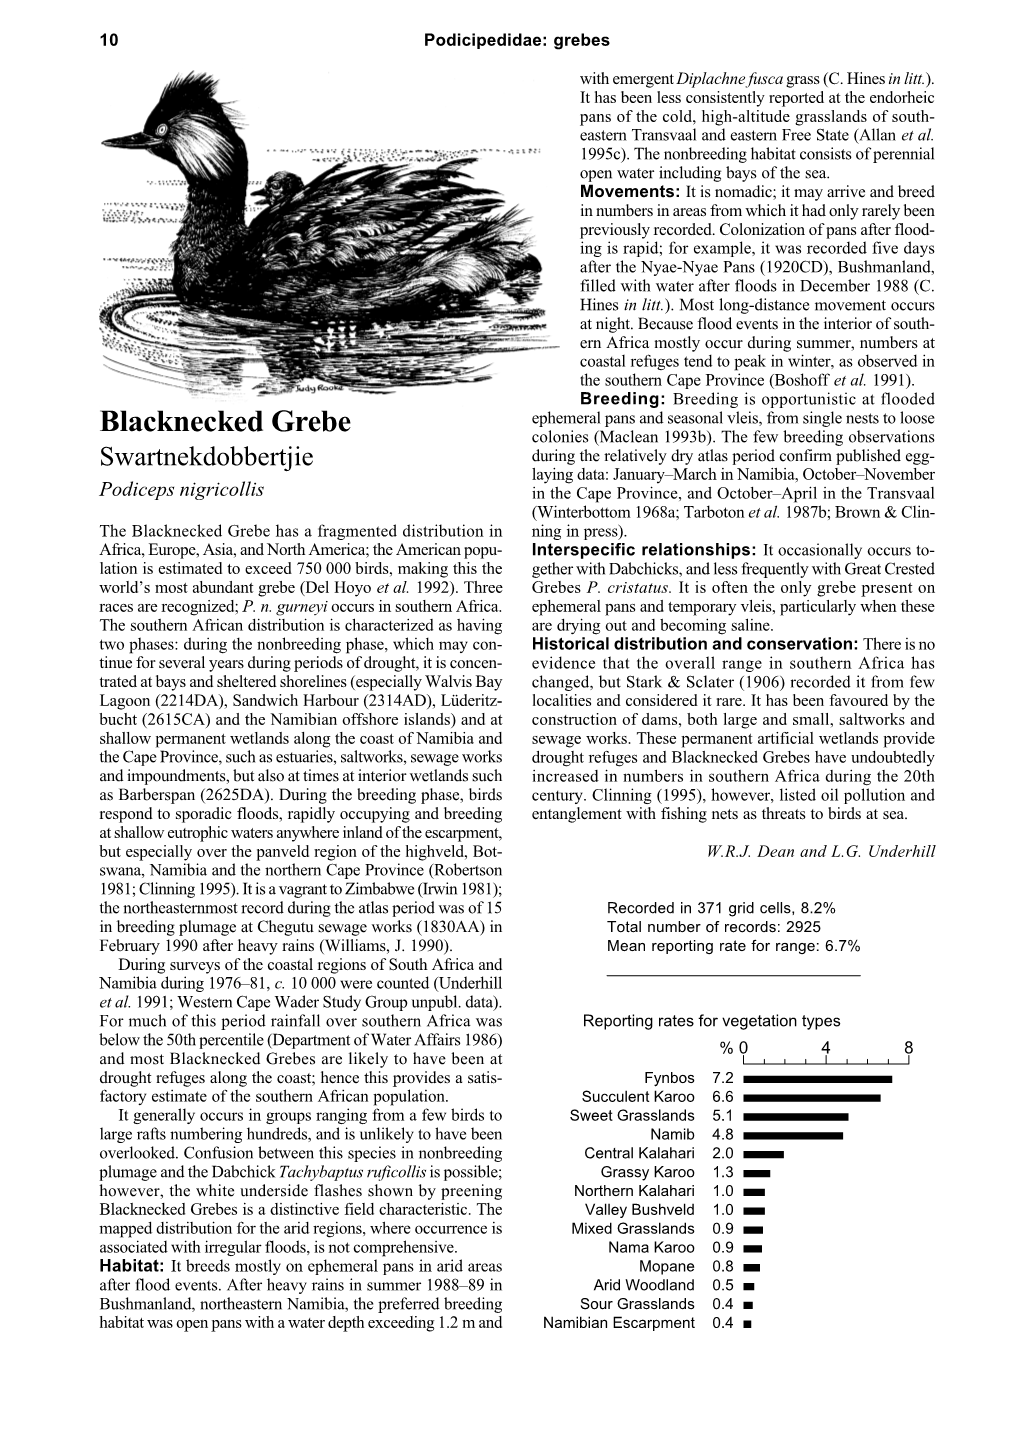 Blacknecked Grebe Colonies (Maclean 1993B)